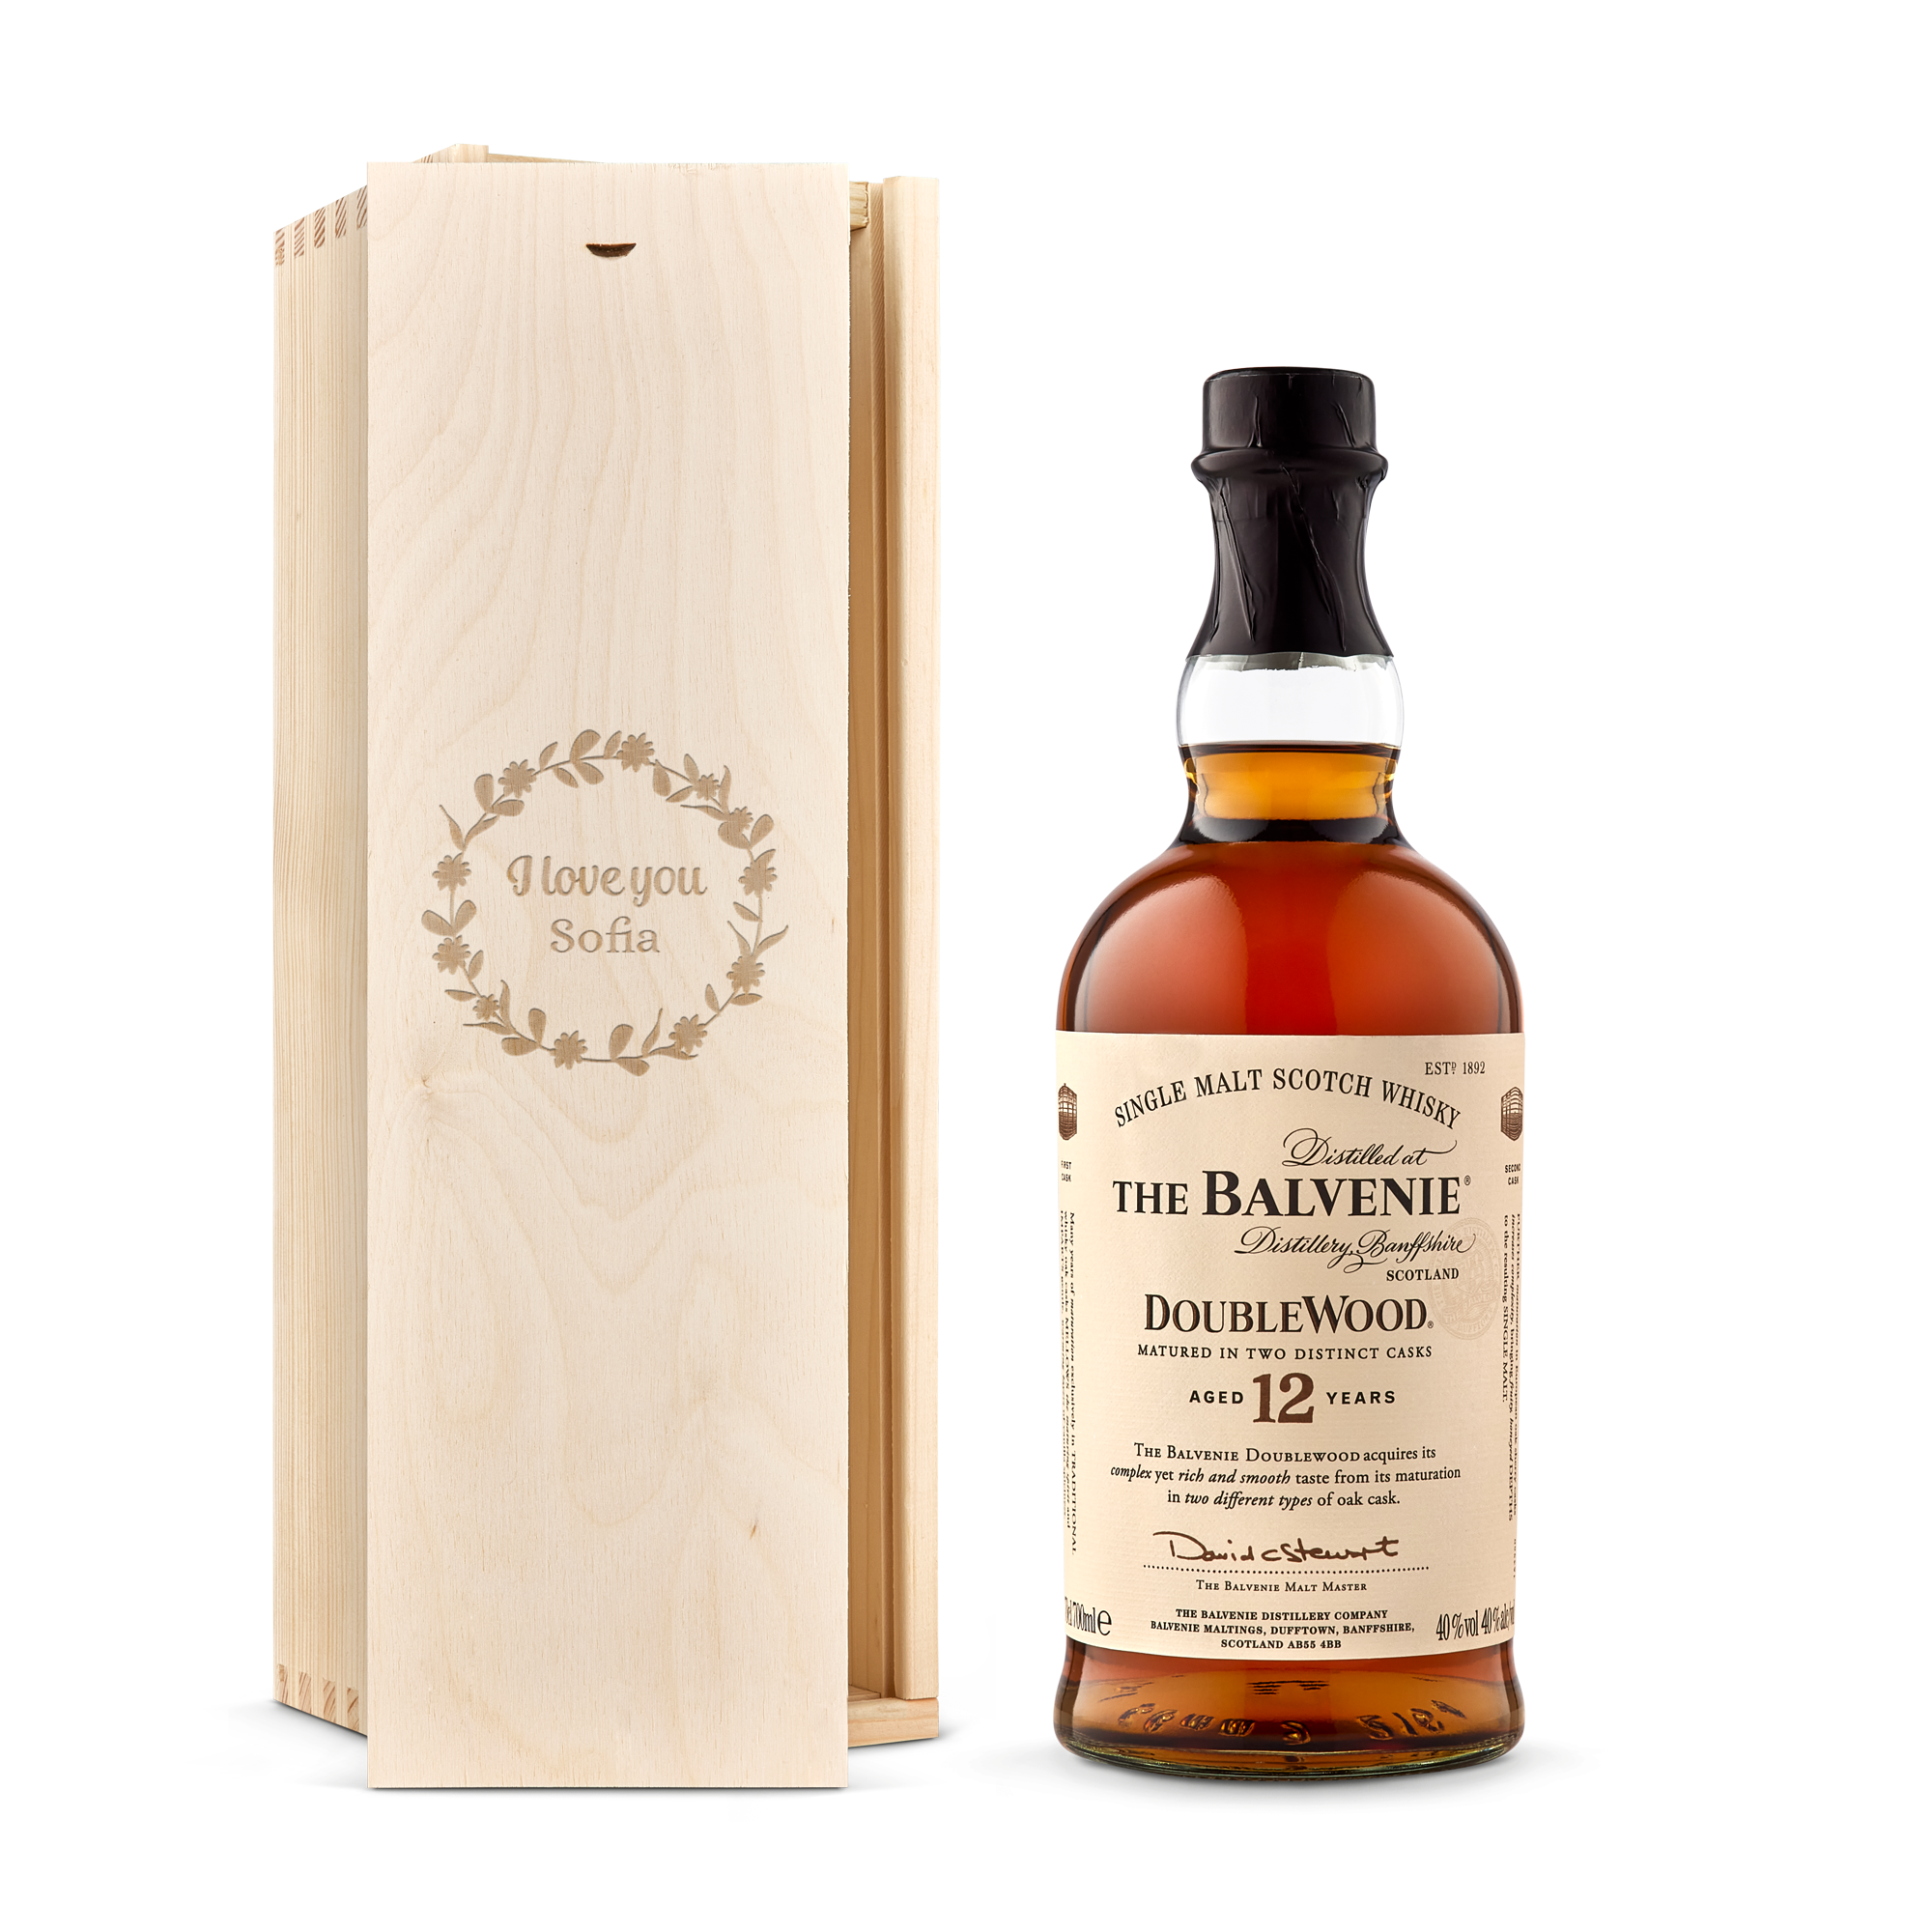 Whiskey i personlig trækasse - The Balvenie